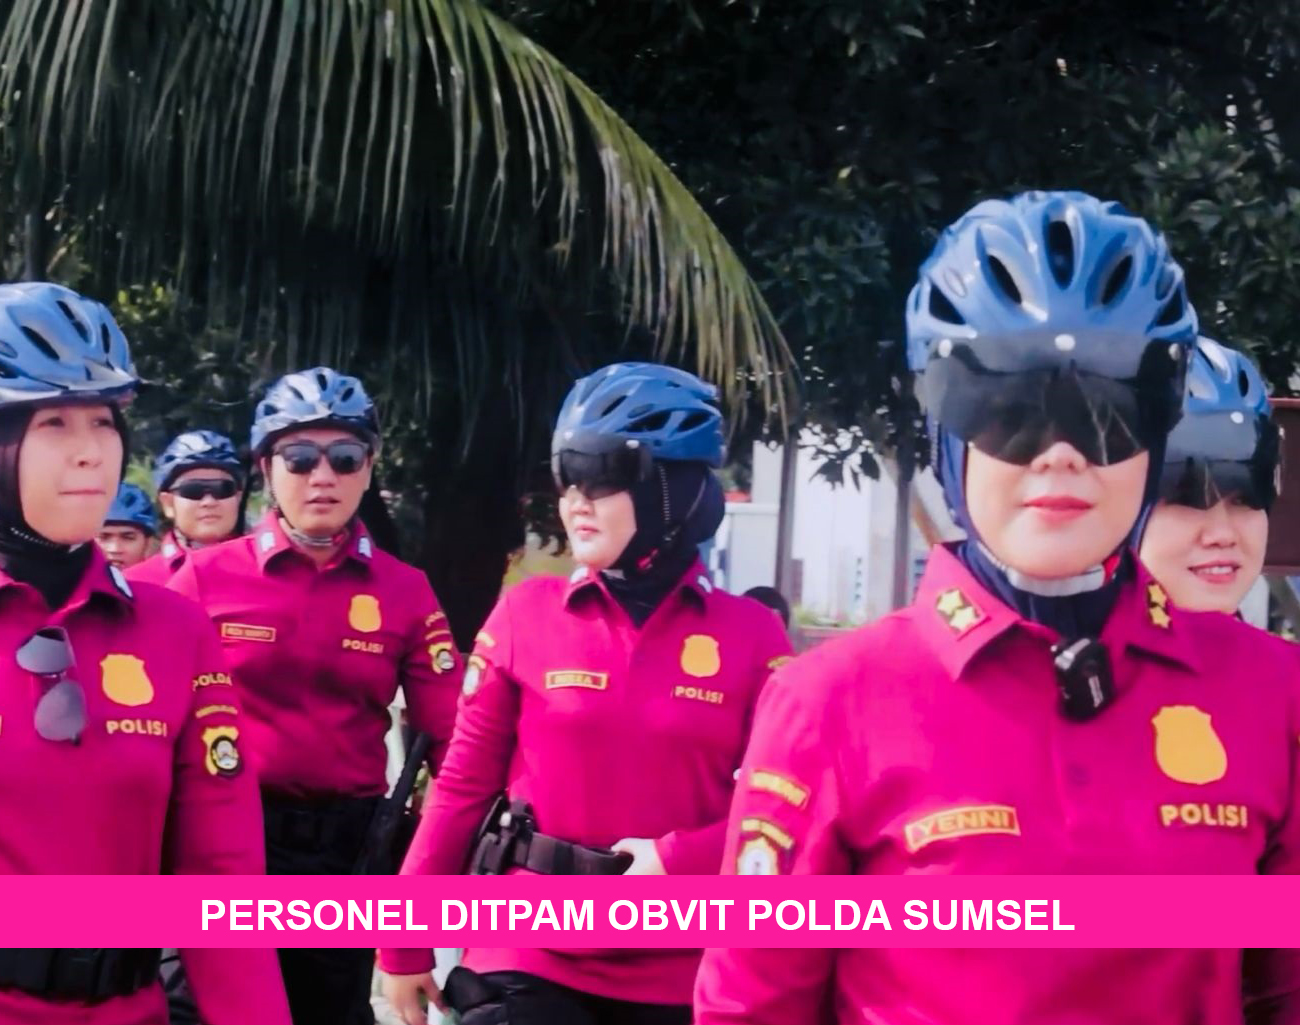 Personel Ditpam Obvit Polda Sumsel Gelar Patroli Bersepeda, Lakukan ‘Coolling System’ di Kawasan Wisata